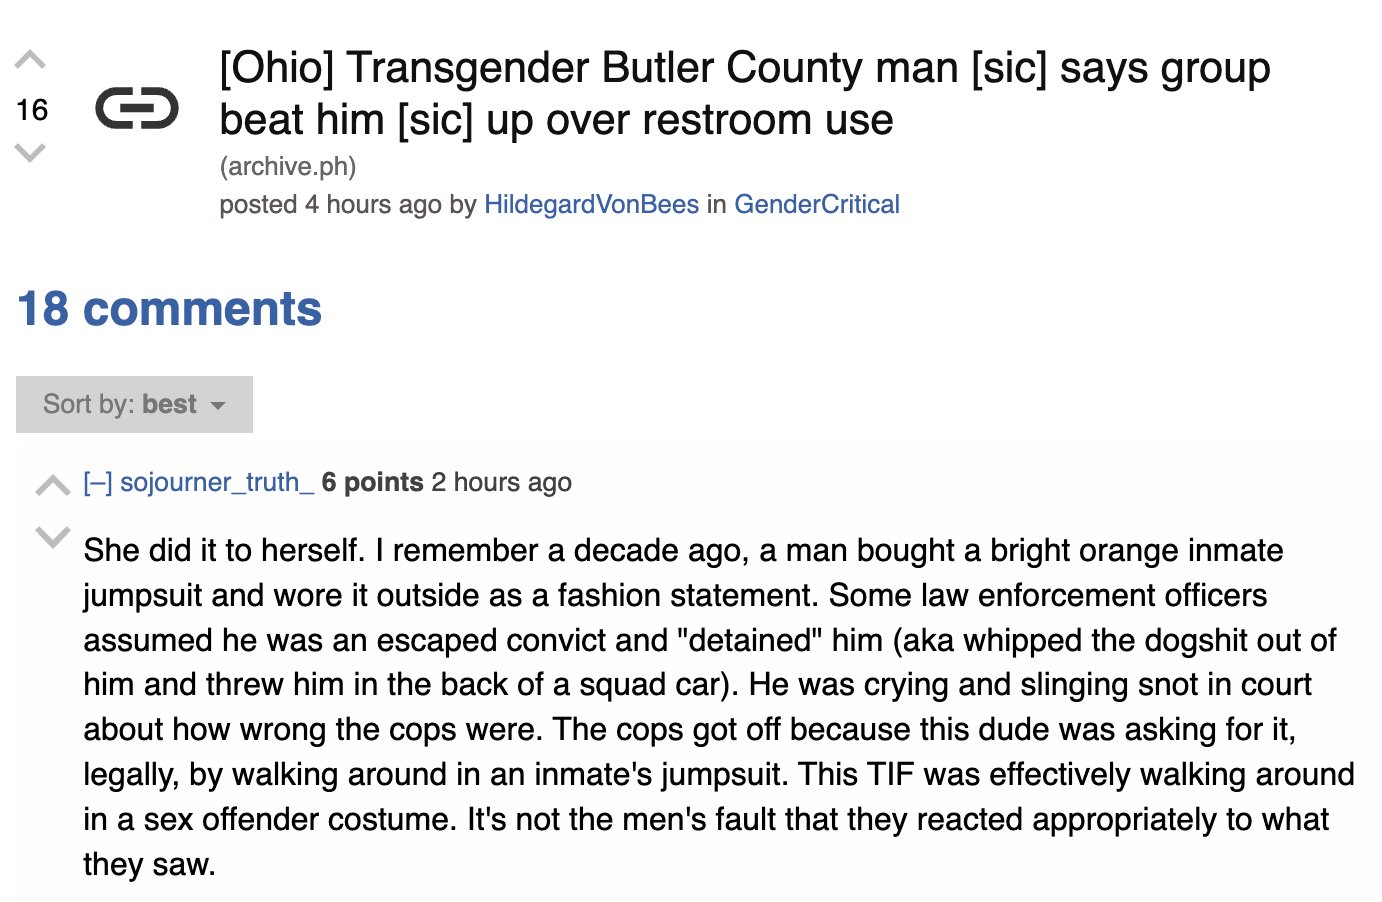 butler gender critical comment